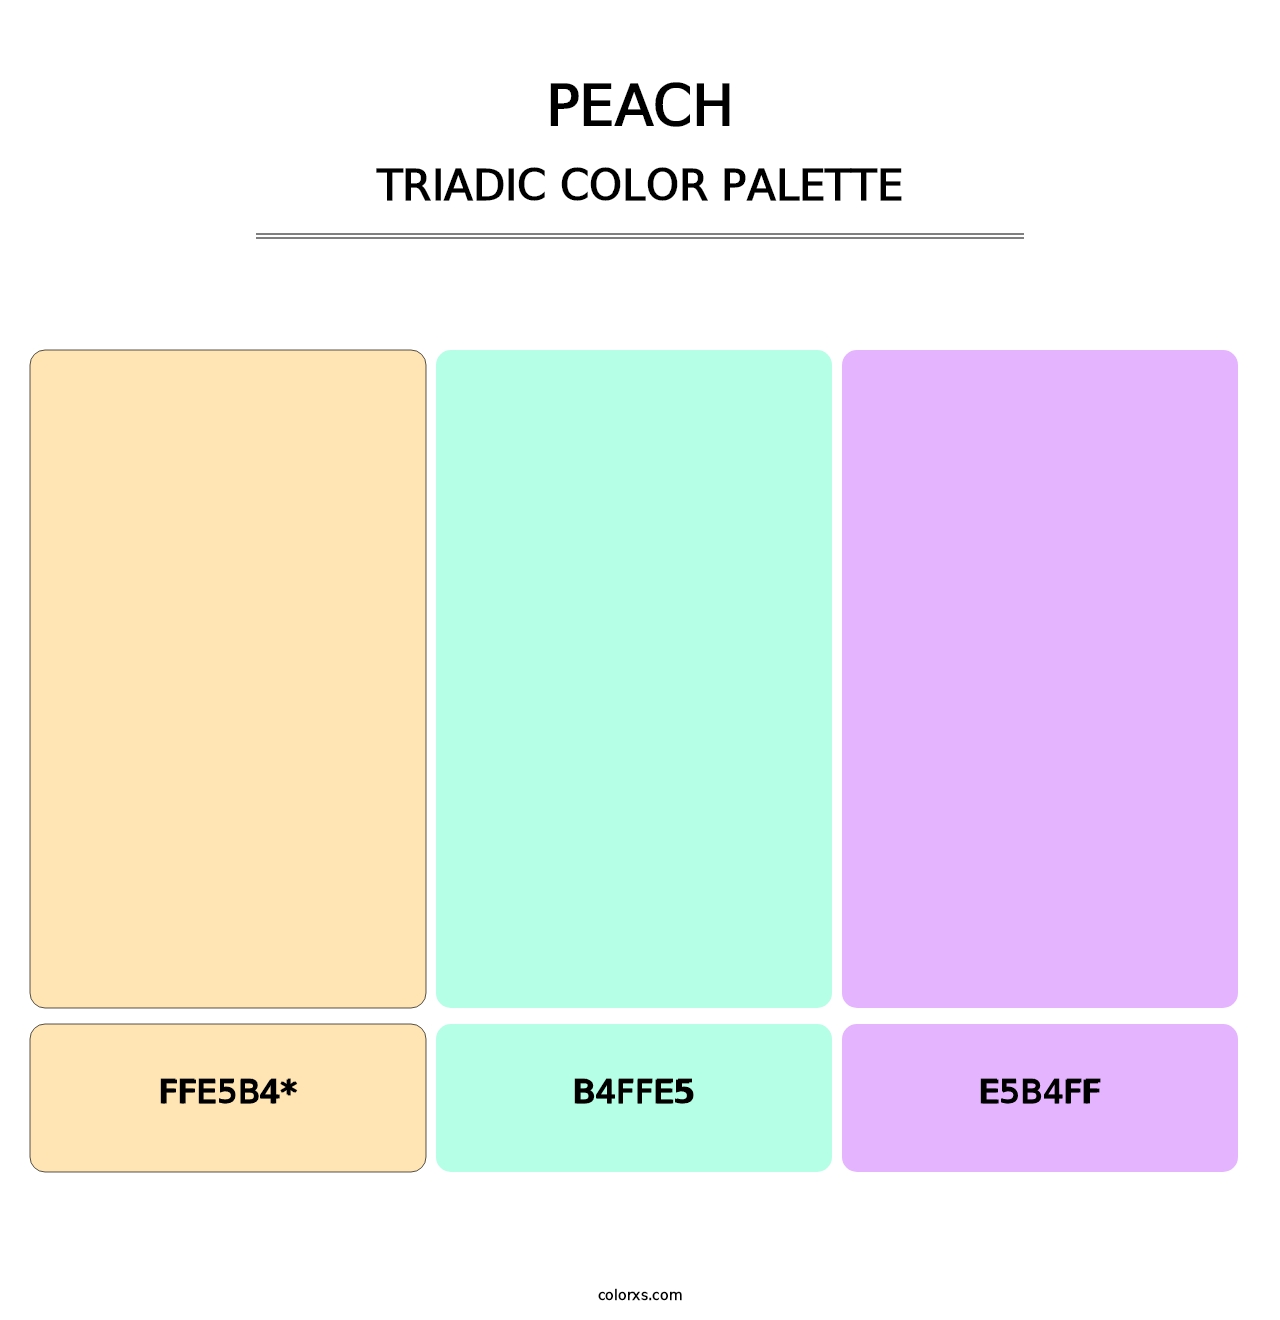 Peach - Triadic Color Palette